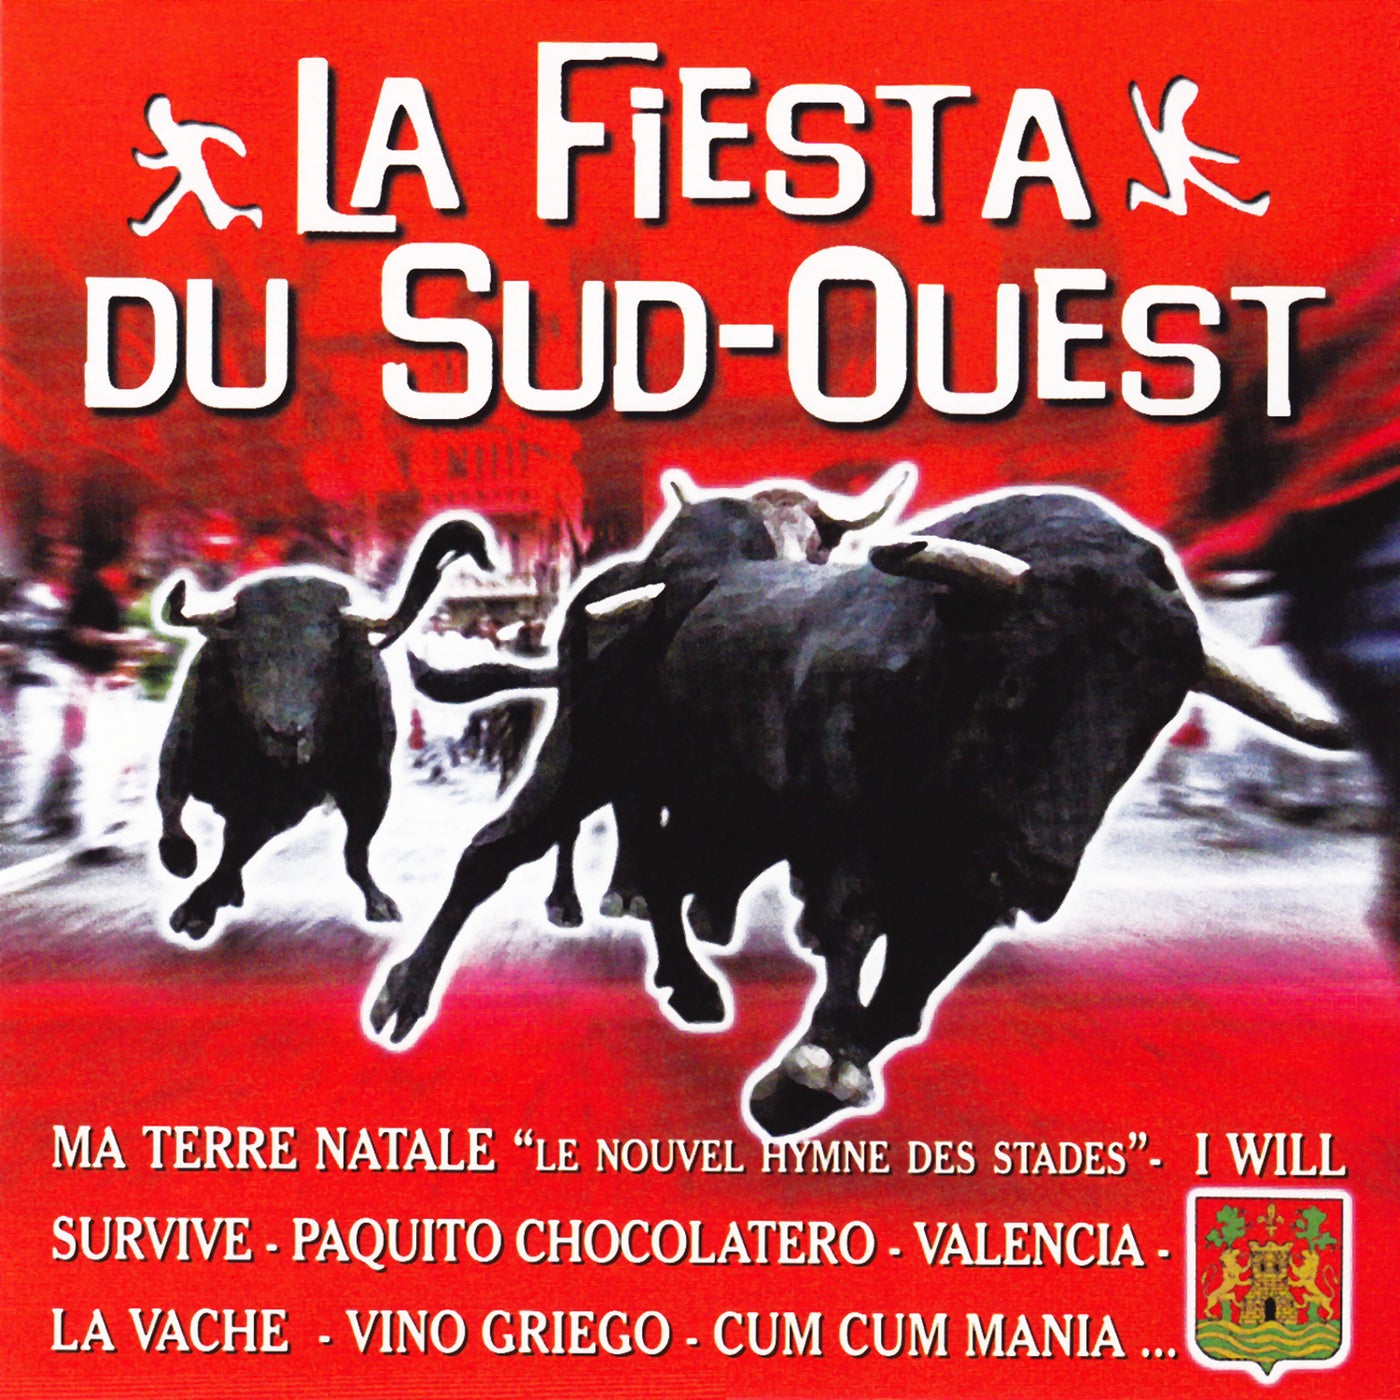 La Fiesta Du SudOuest Vol. 1 by La Fiesta Du SudOuest on Beatsource